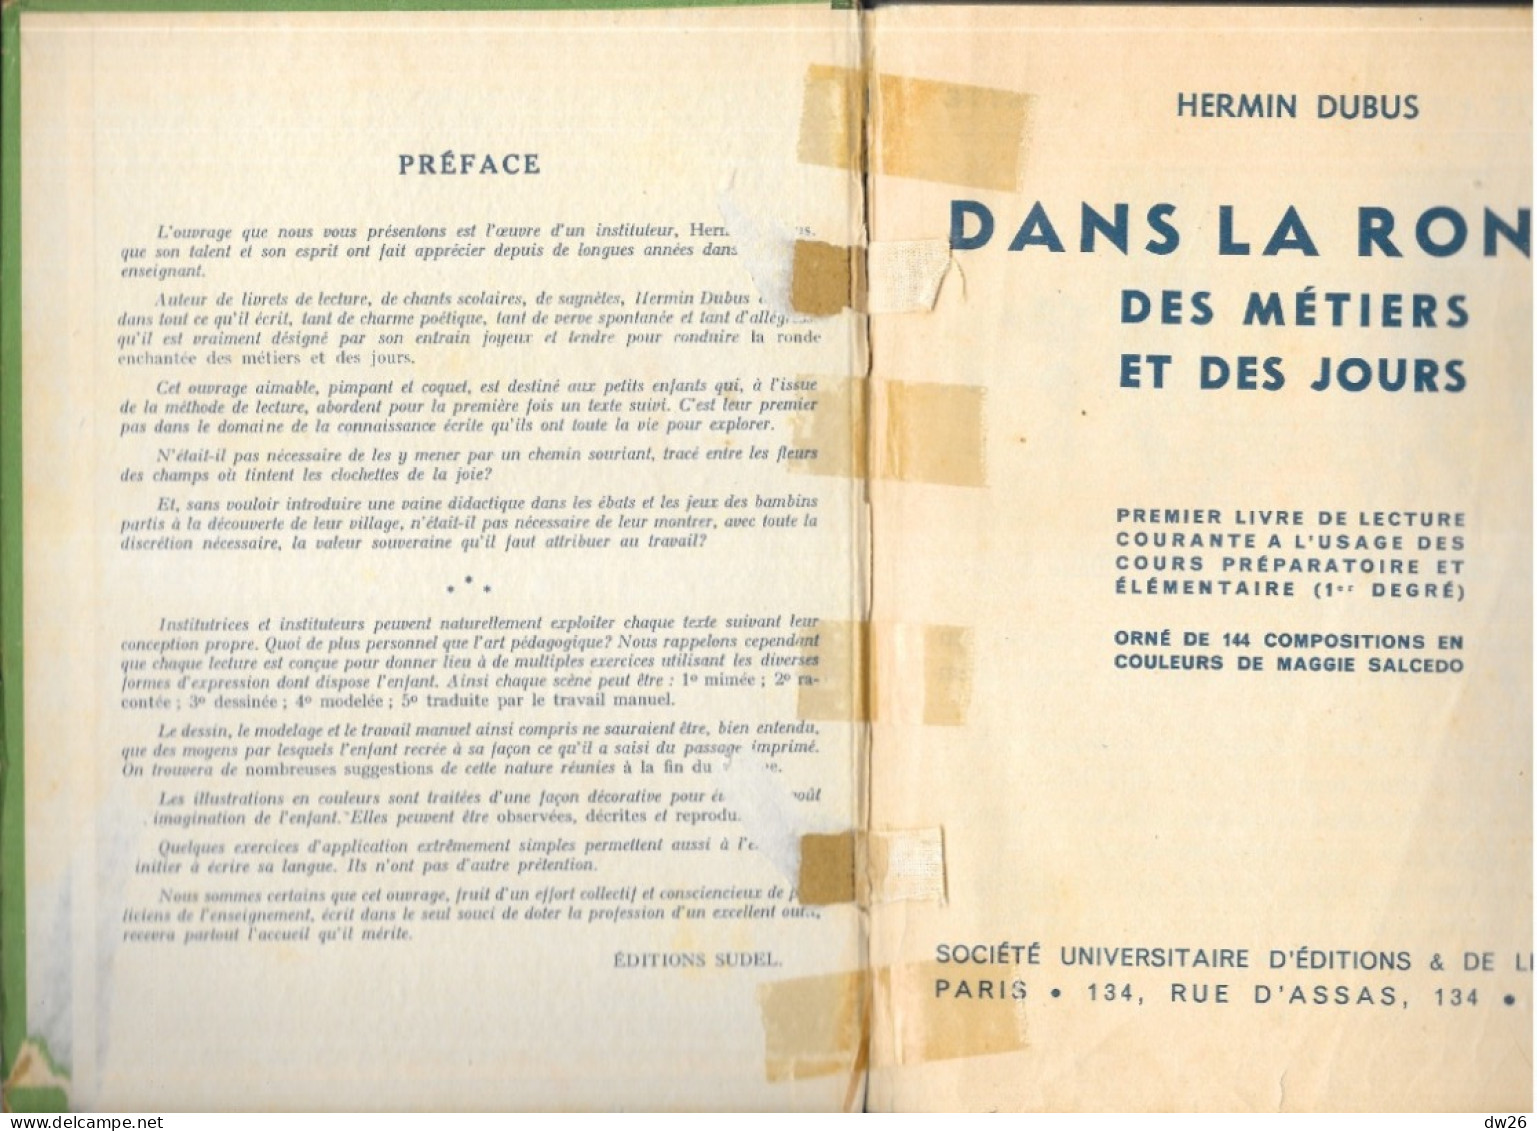 Livre De Lecture: Dans La Ronde Des Métiers Et Des Jours Par Hermin Dubus - Cours Préparatoire Et Elémentaire - 6-12 Years Old